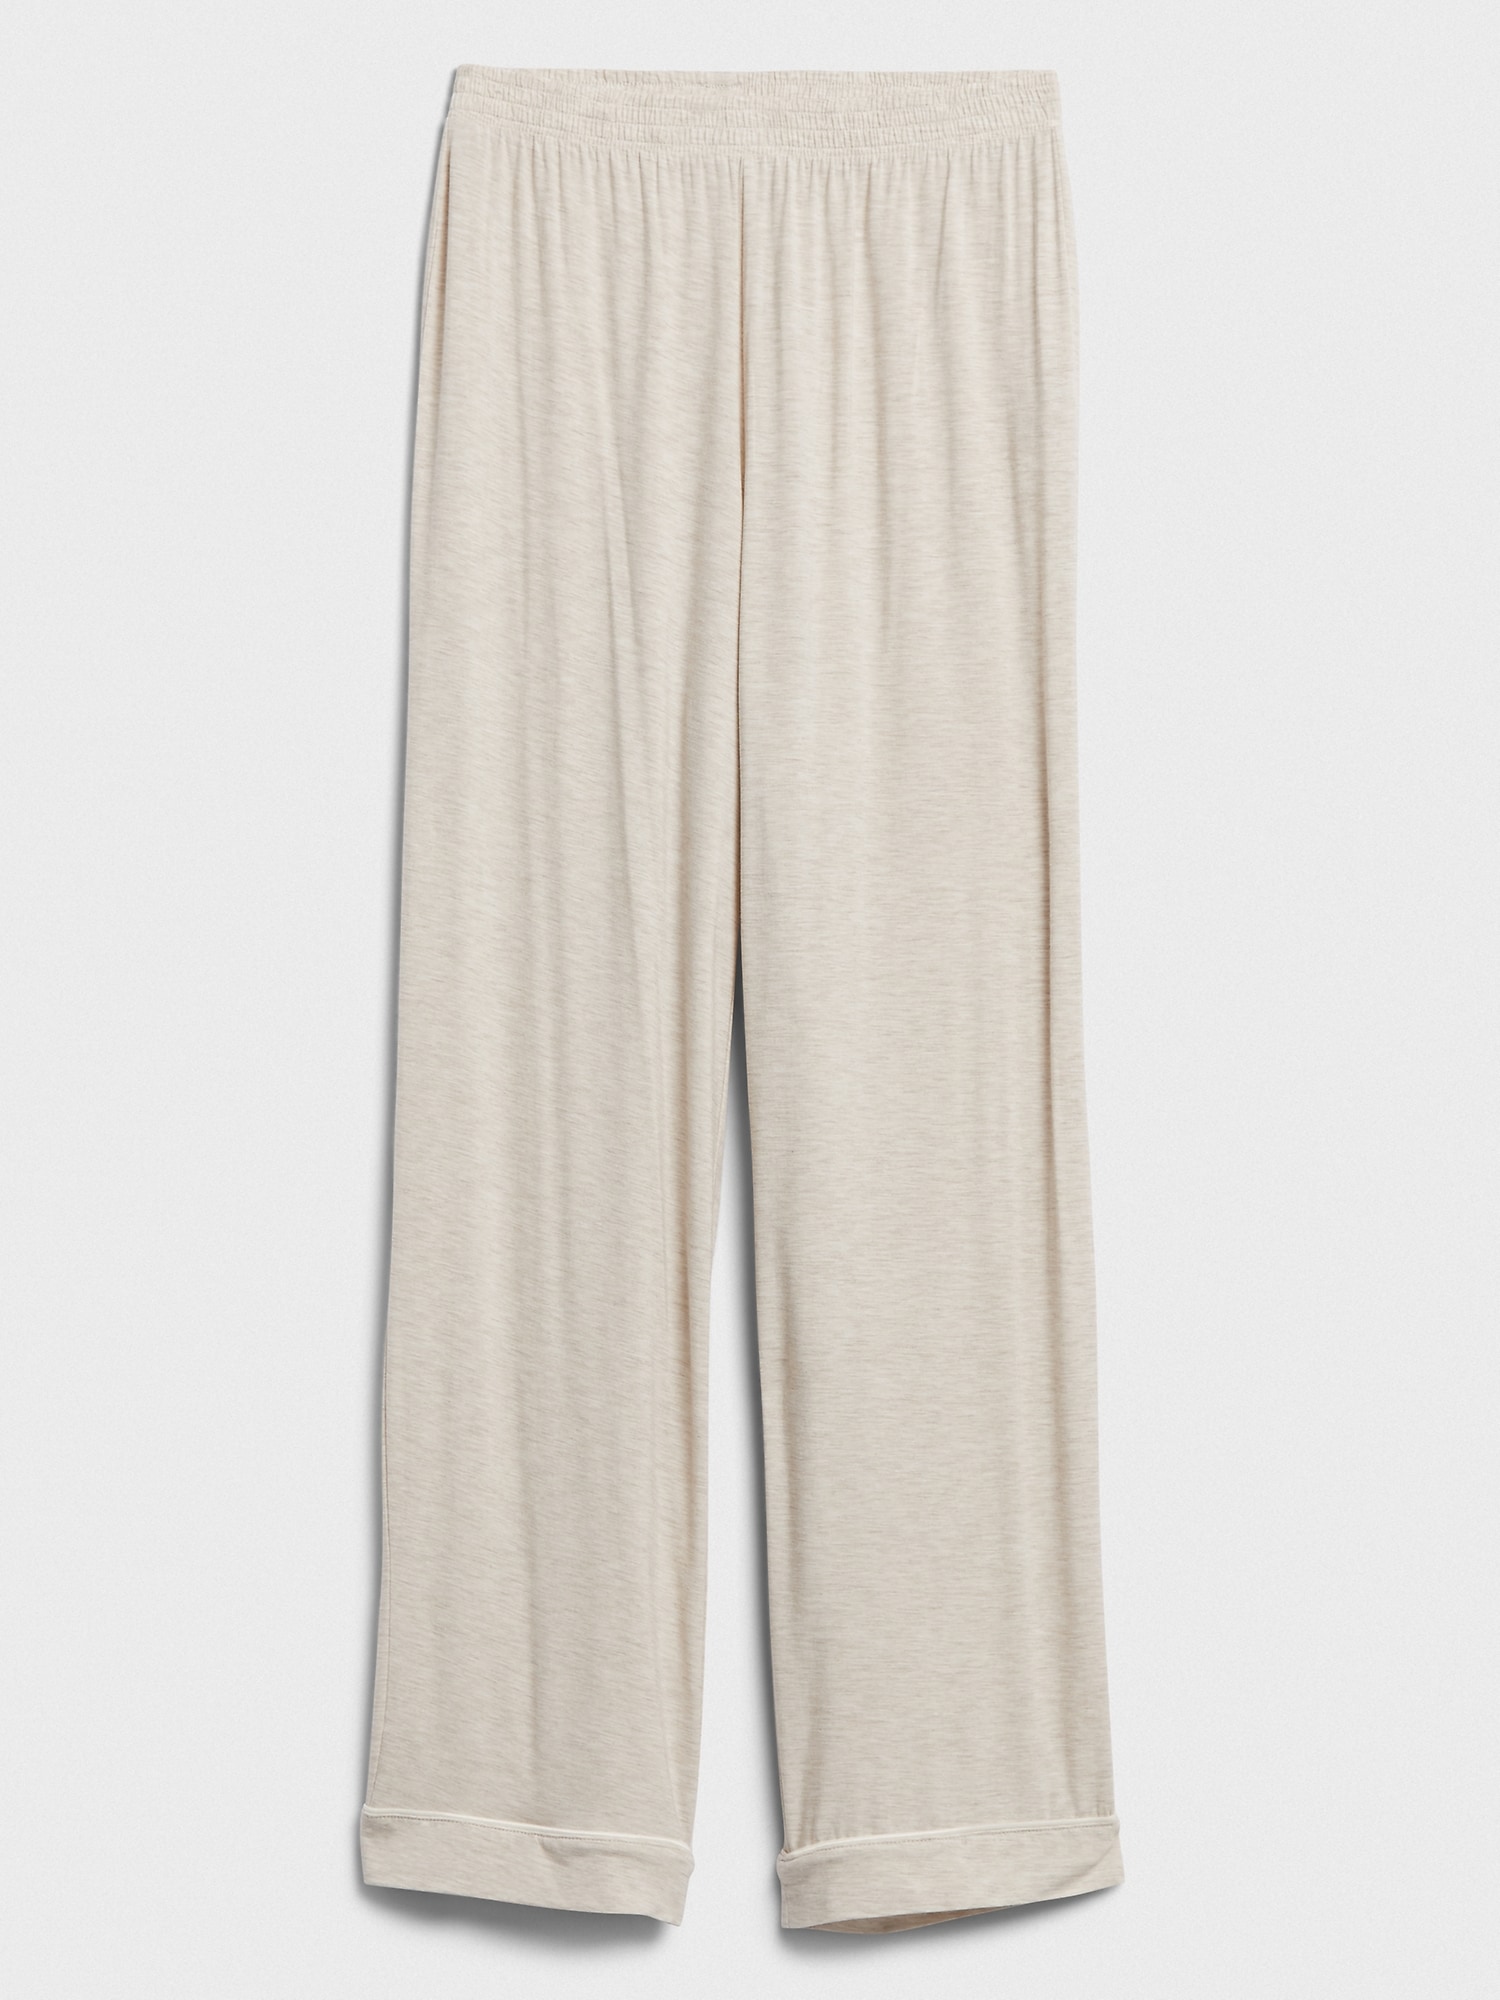 Modal Pajama Pant